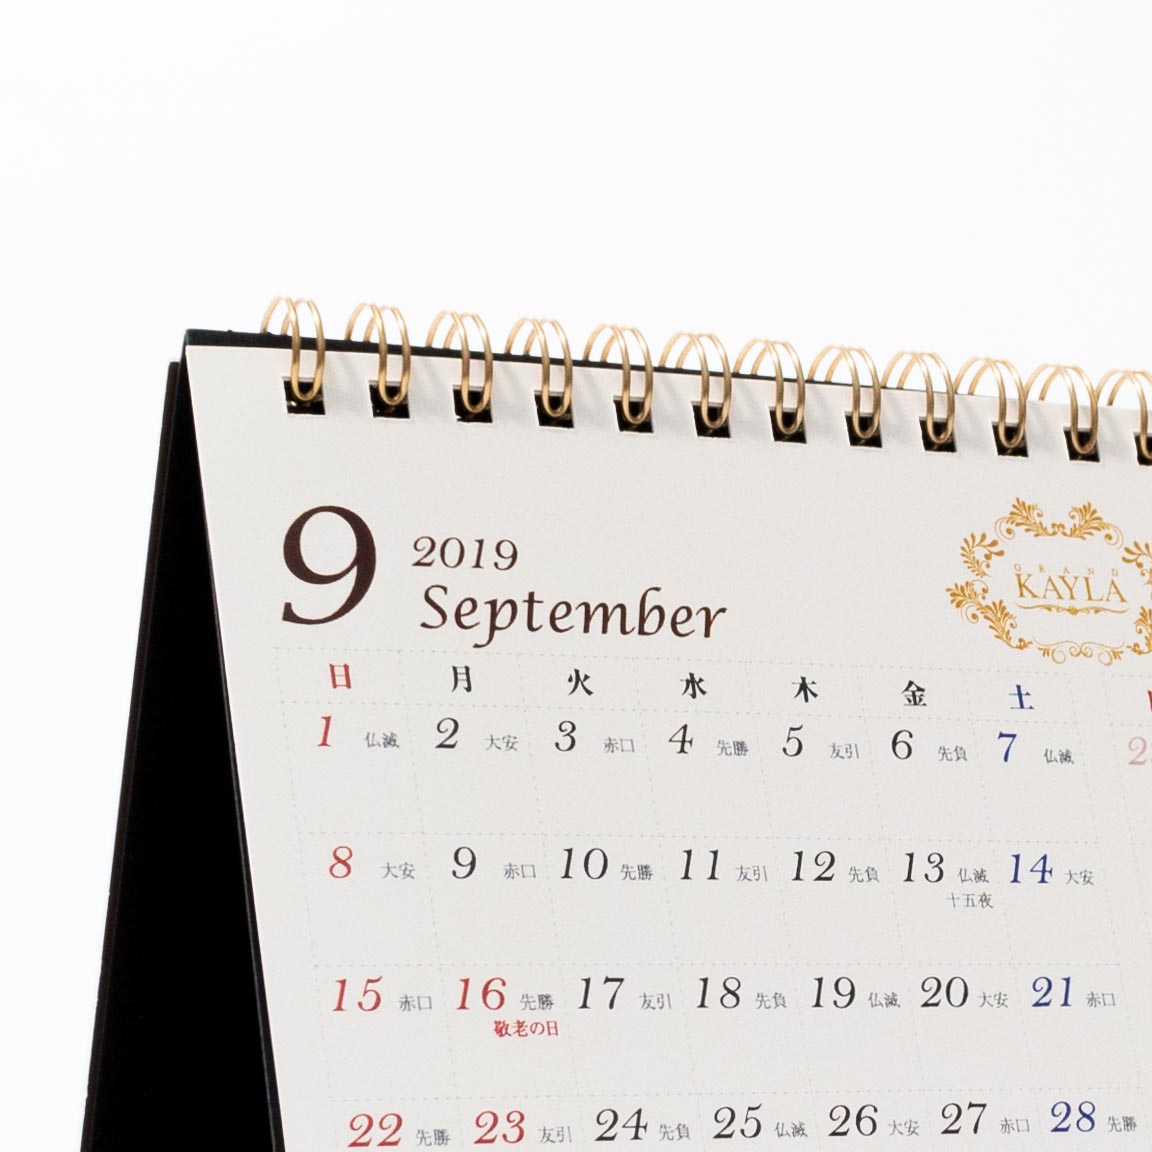 「株式会社サラシア 様」製作のオリジナルカレンダー ギャラリー写真4